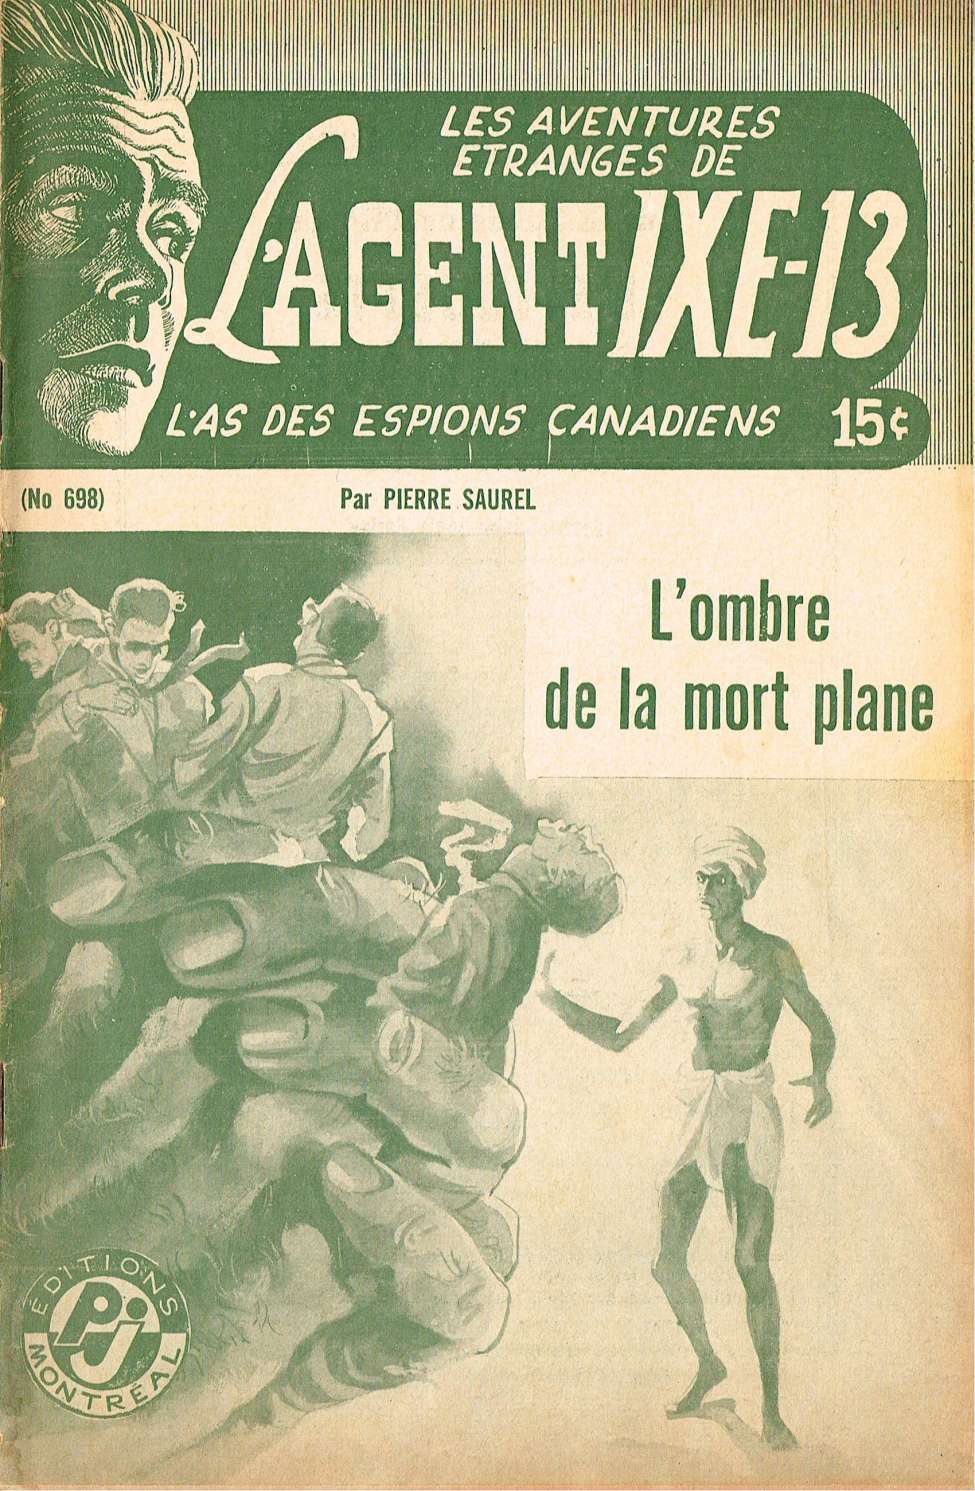 Book Cover For L'Agent IXE-13 v2 698 - L'ombre de la mort plane